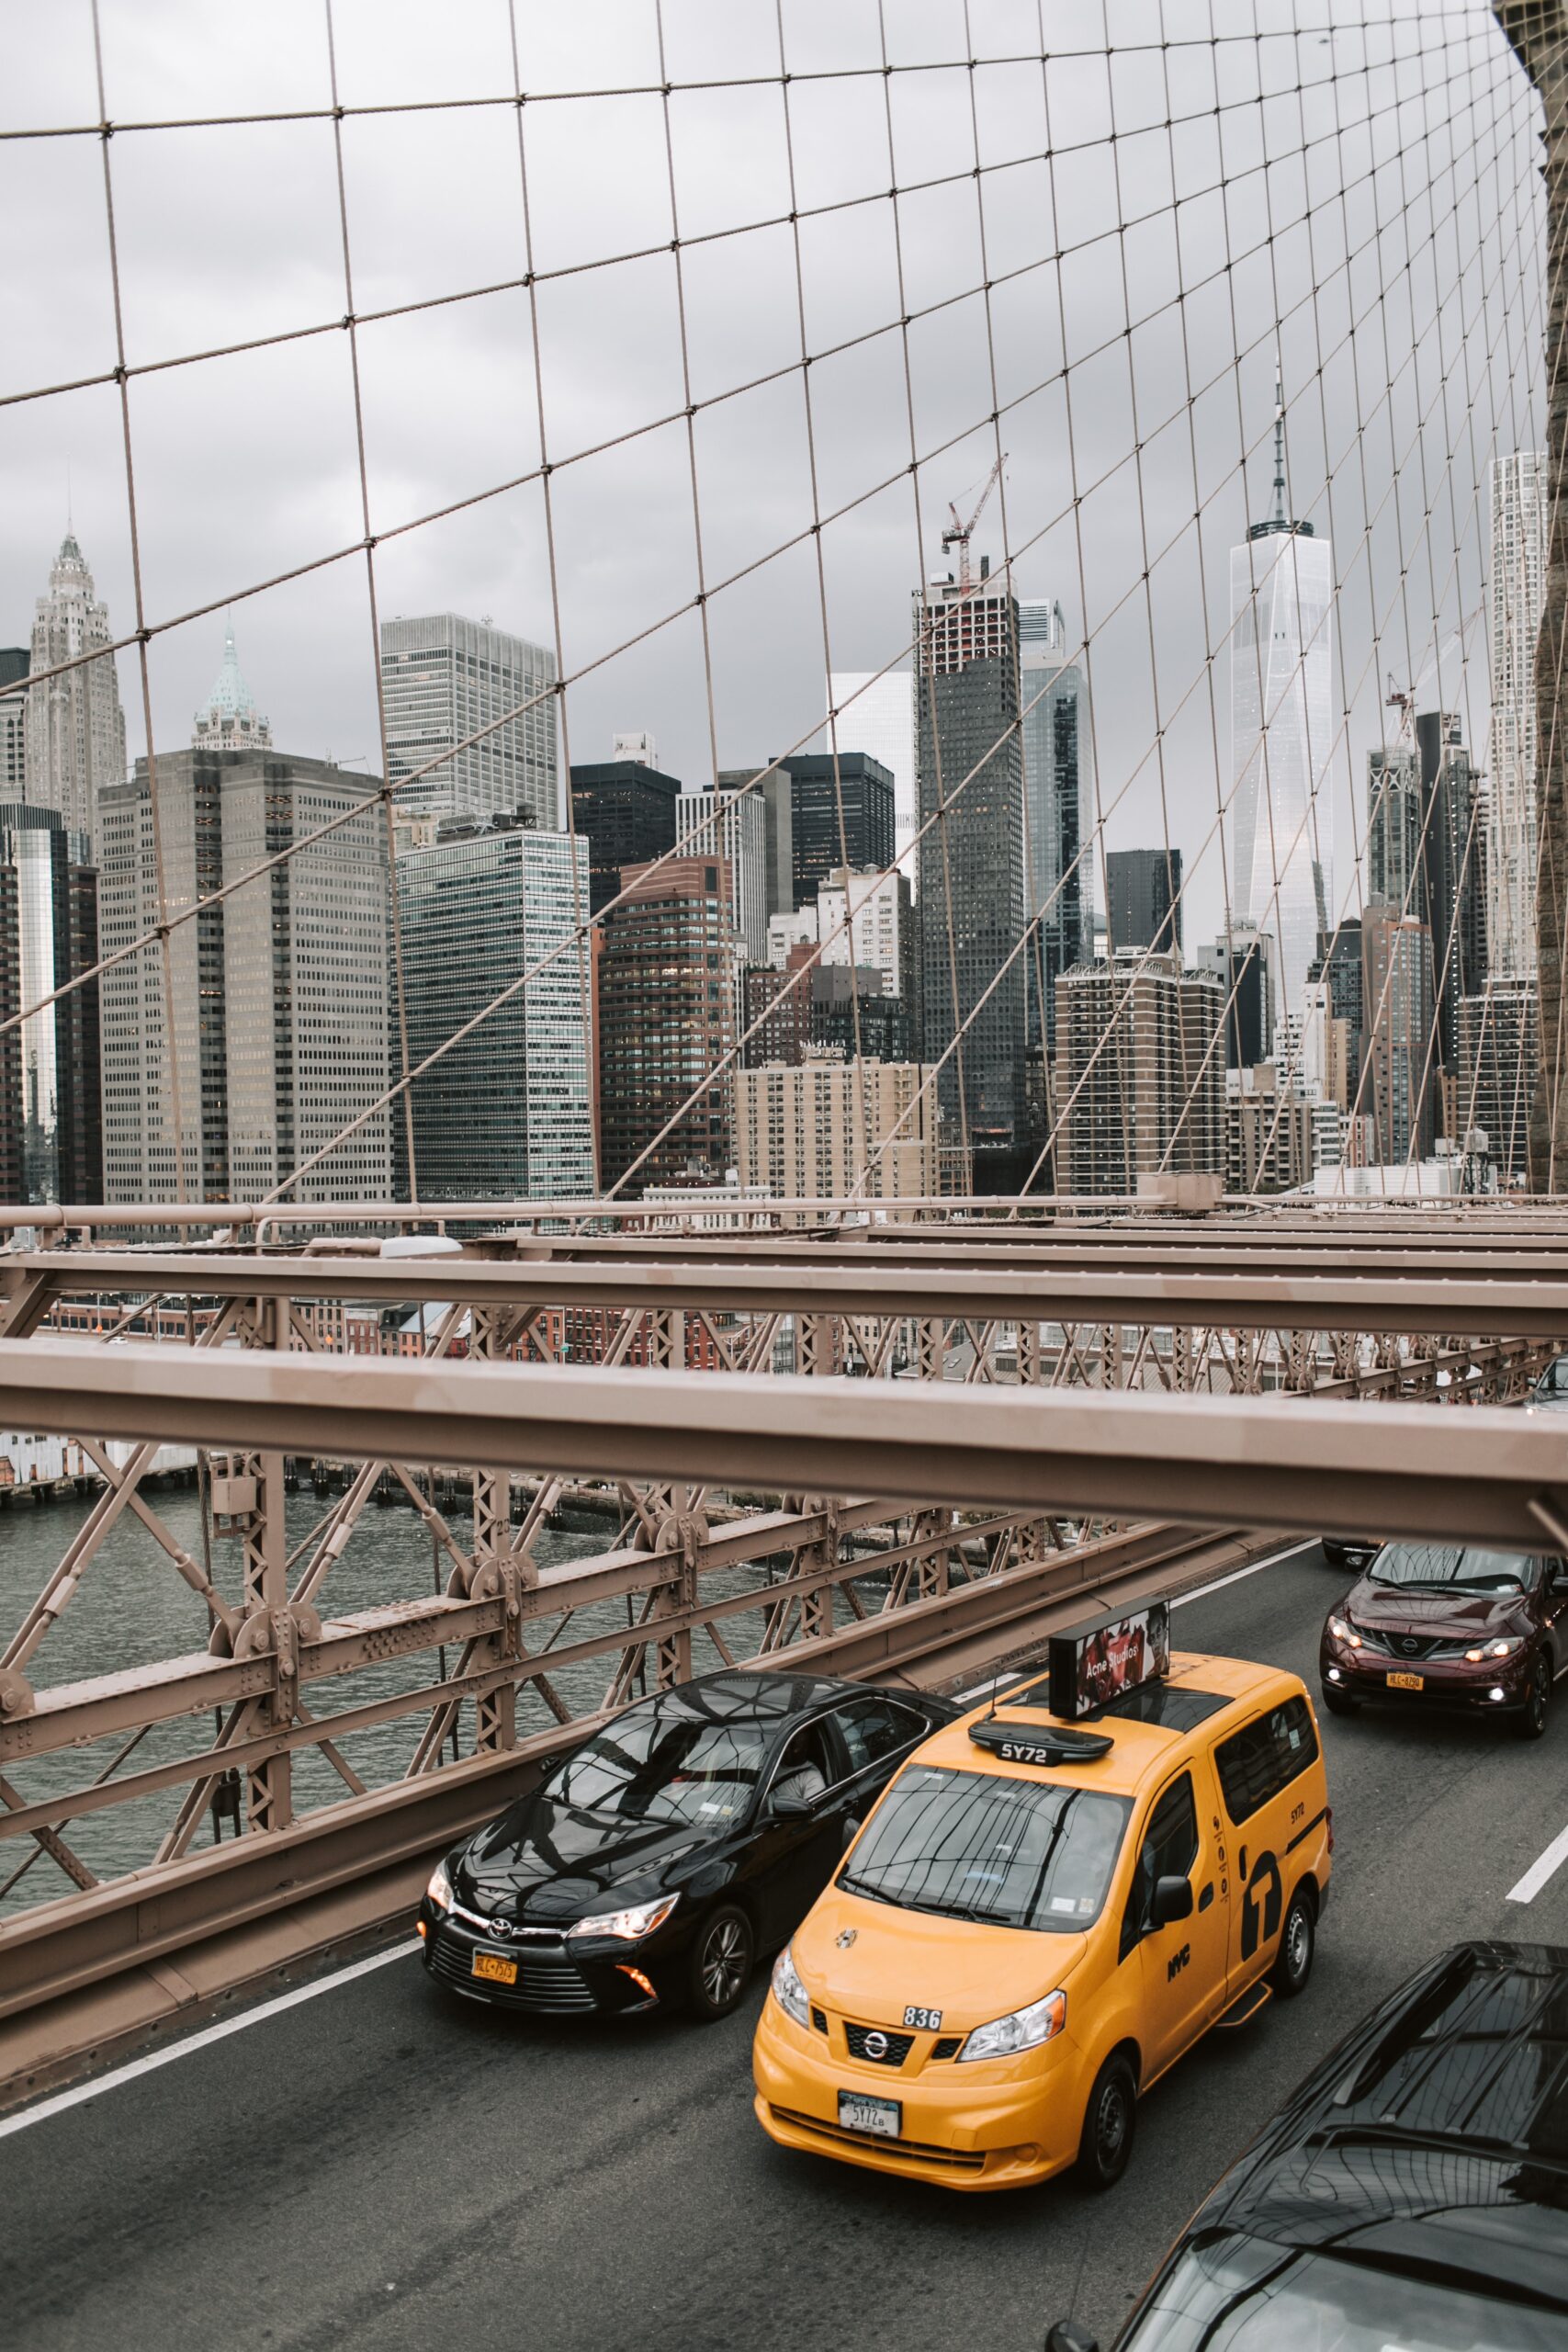 Brooklyn Bridge and taxi